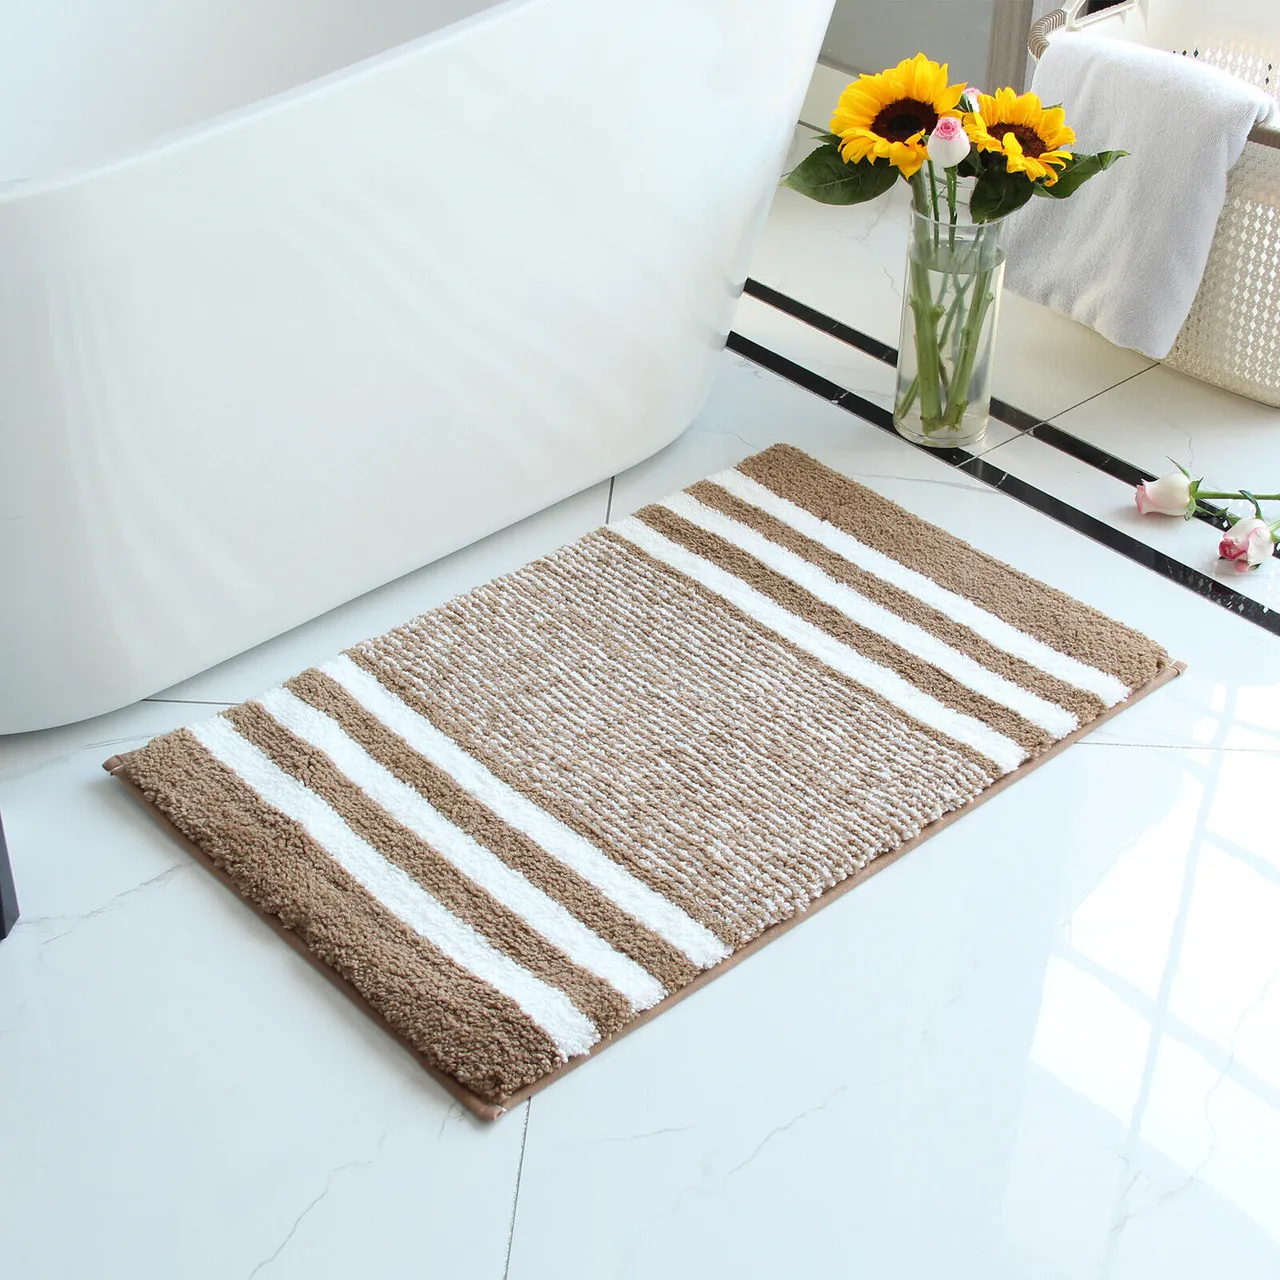 Thảm trải polyester là loại thảm được sử dụng phổ biến trong các không gian phòng tắm